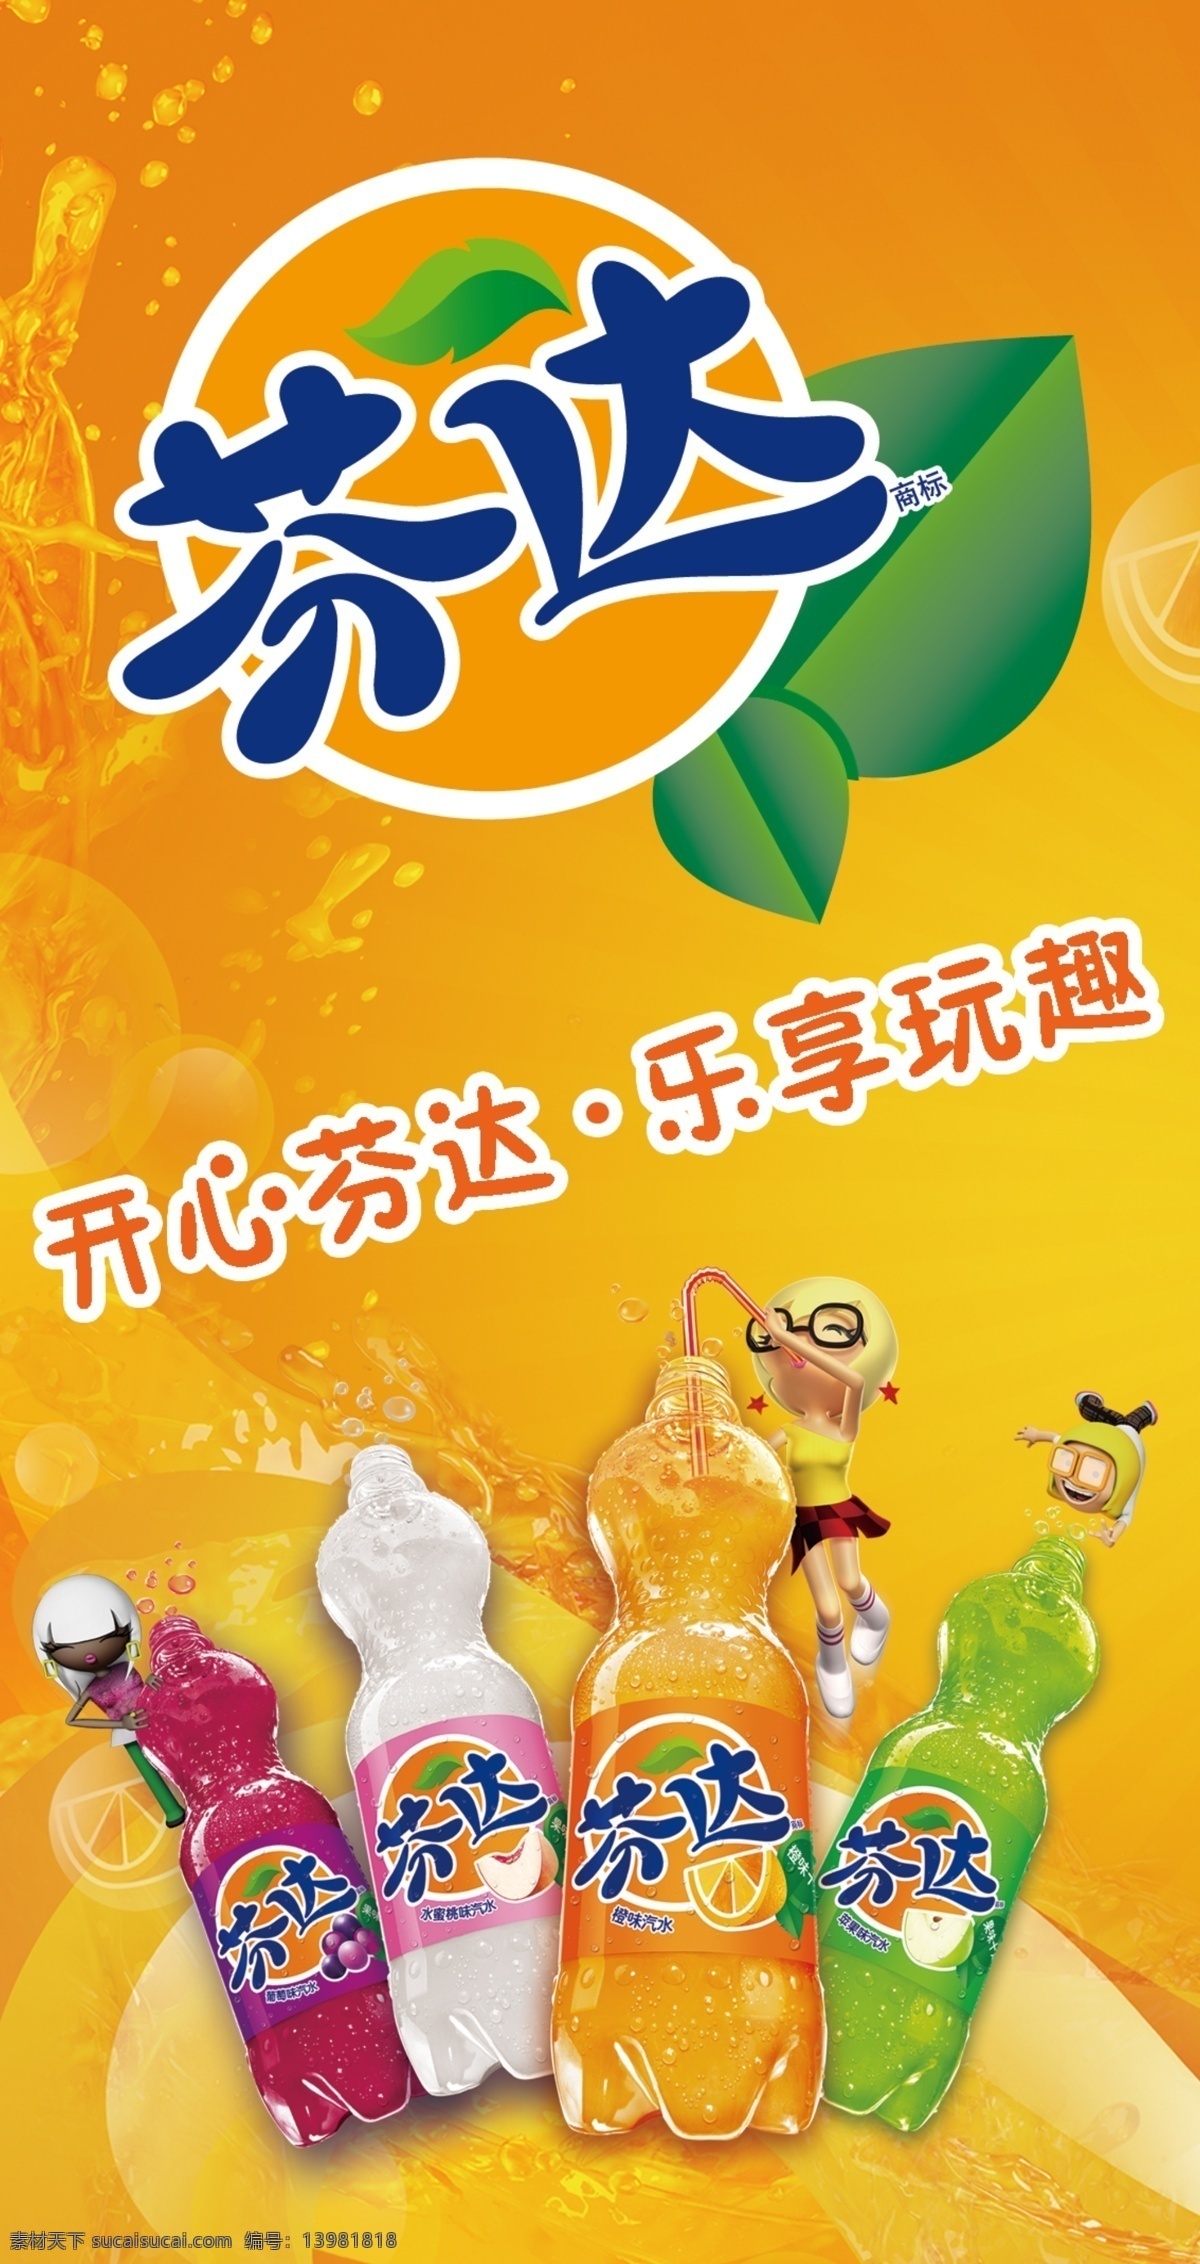 芬达 饮料 促销台 苹果味 葡萄味 柠檬味 橙色 气泡 卡通小孩 广告设计模板 源文件